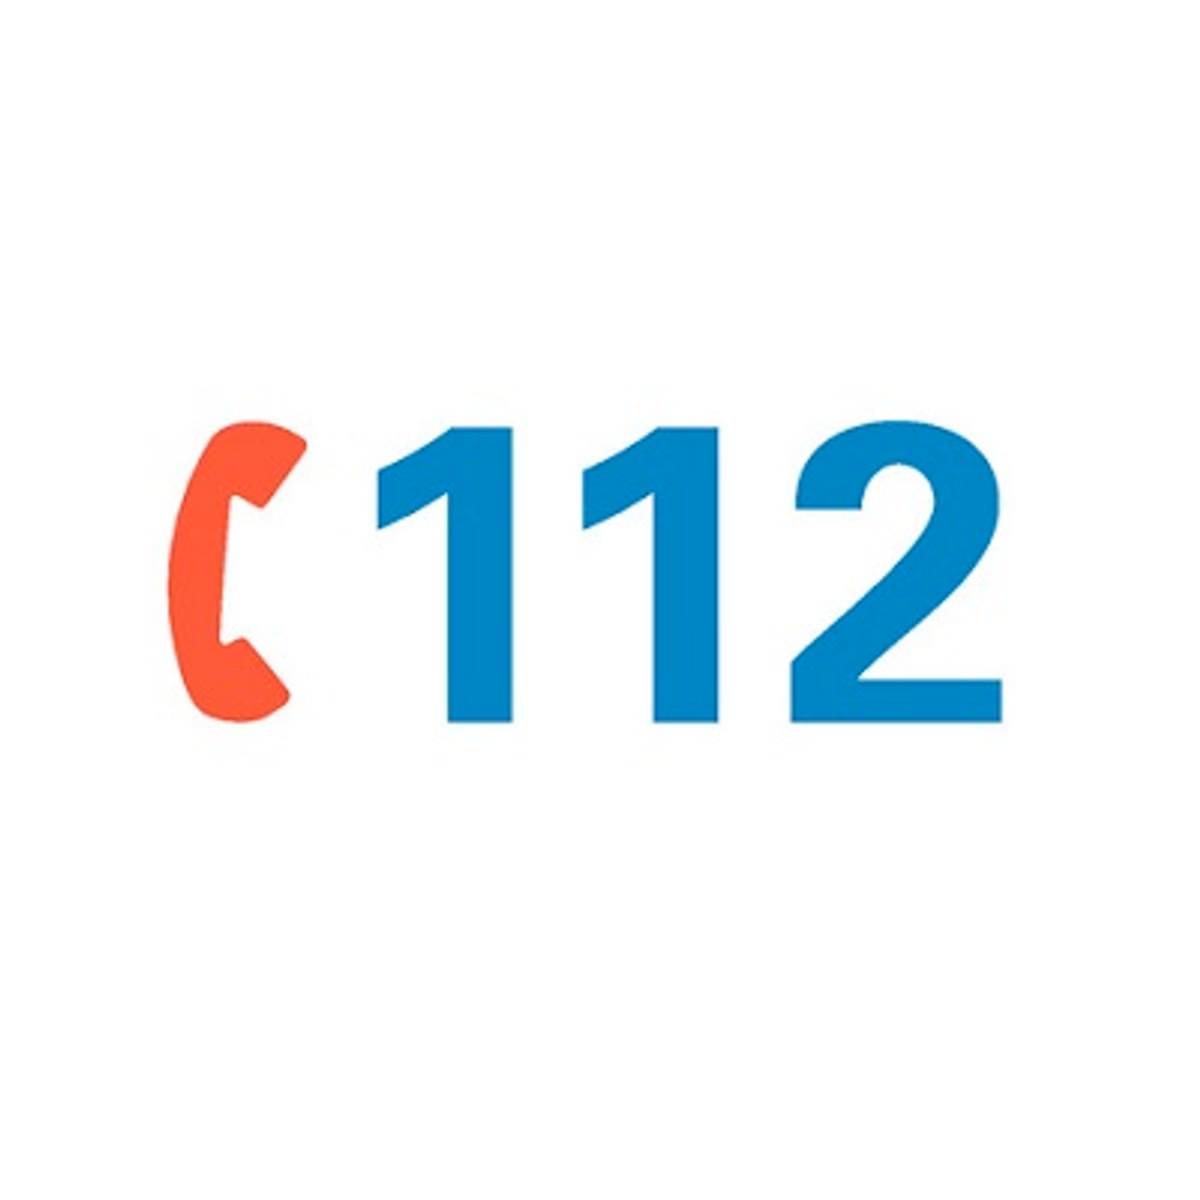 Alarmnummer 112 bij telecomaanbieders bereikbaar via wifi bellen en 4G image